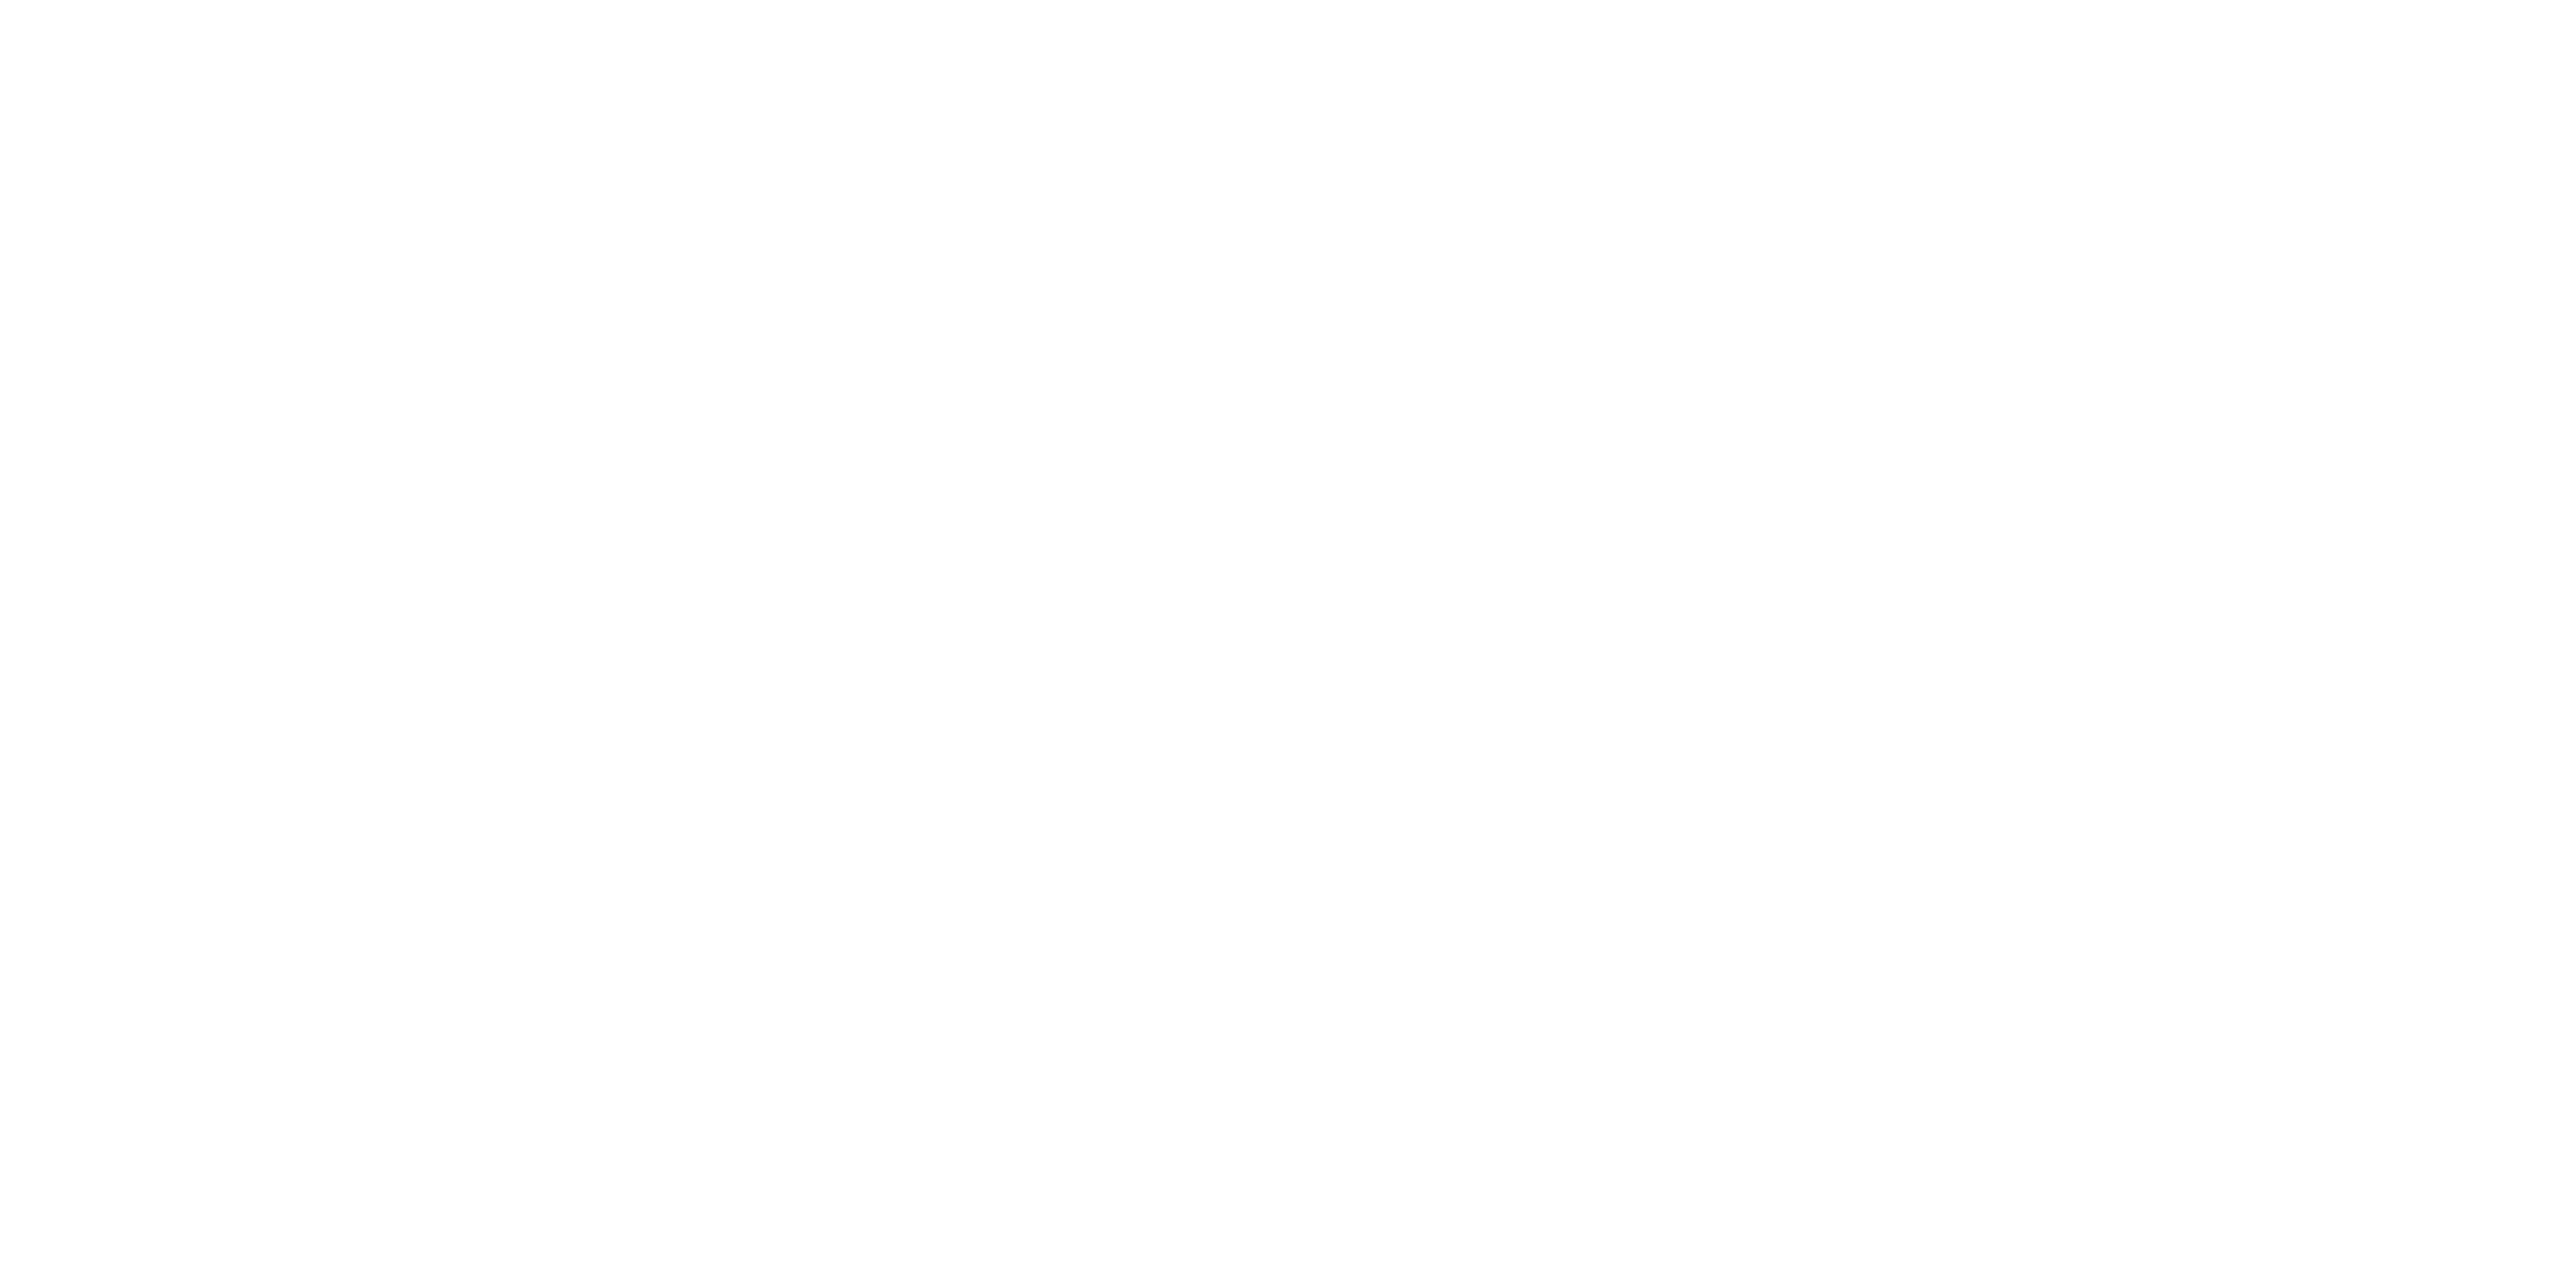 Osteopatia balanssi - Kehon rakenteen ja toiminnan asiantuntija, Oulu.